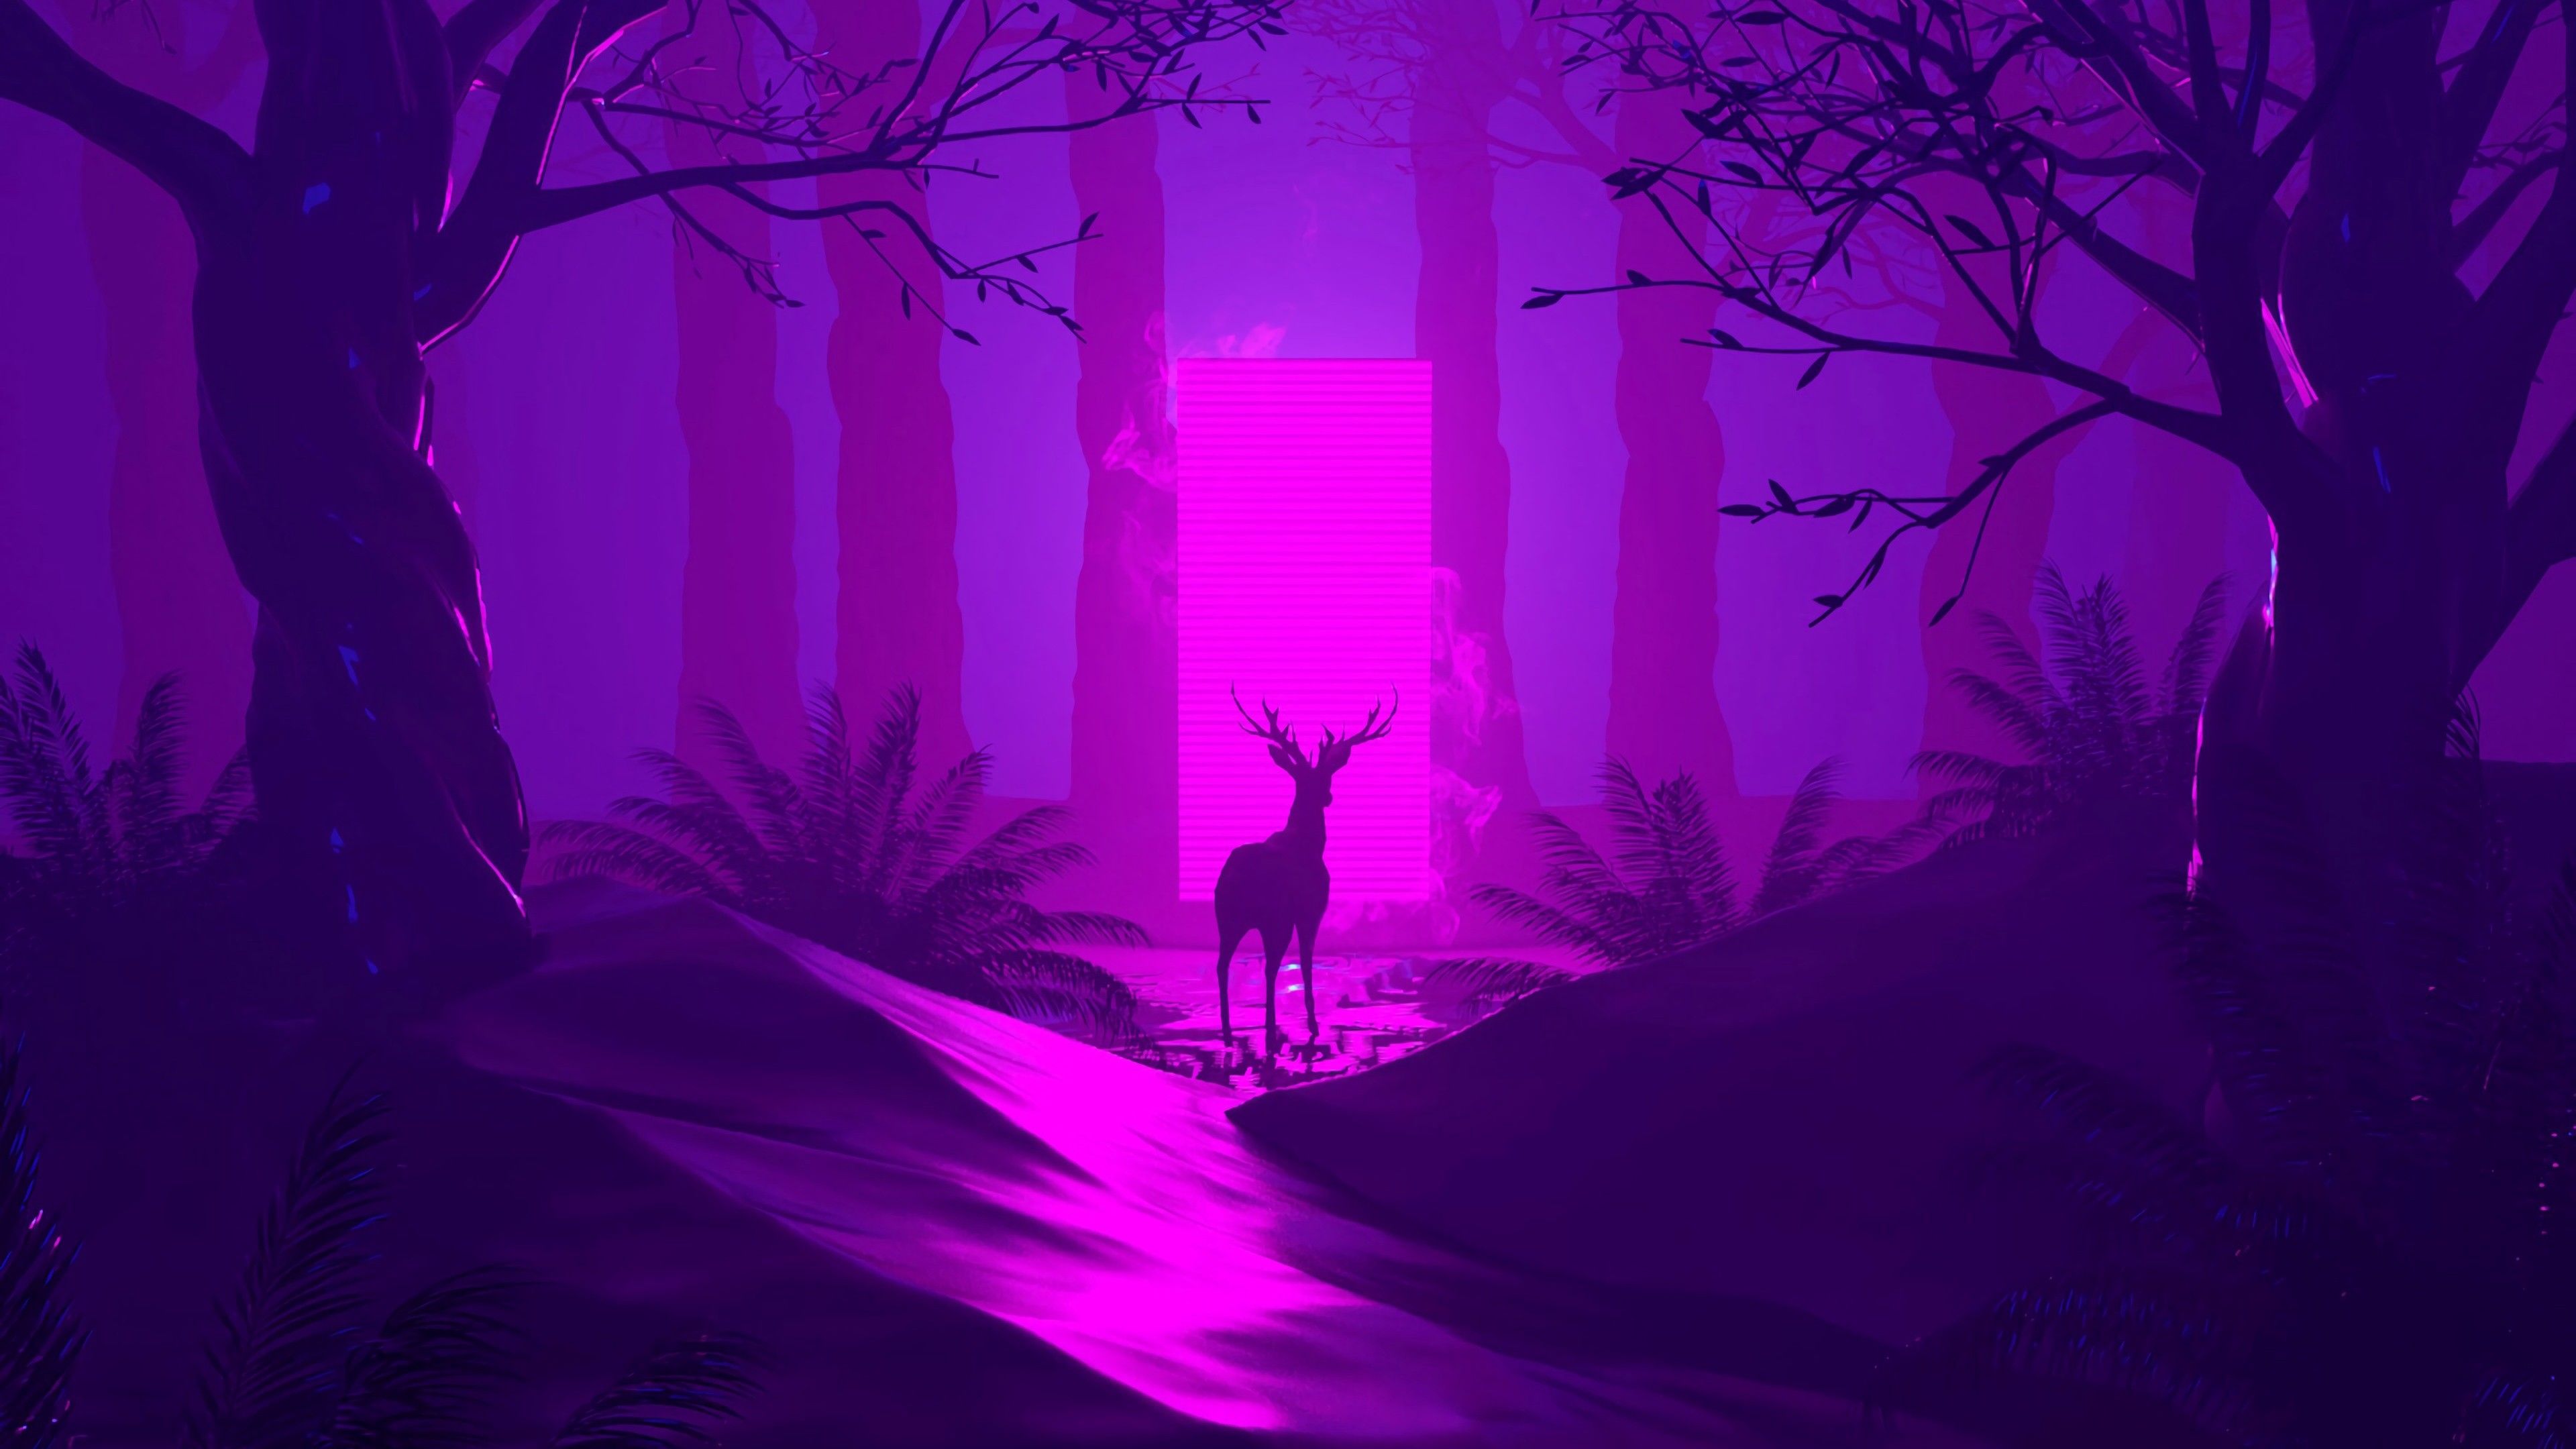 A deer in a purple forest - Purple, dark purple